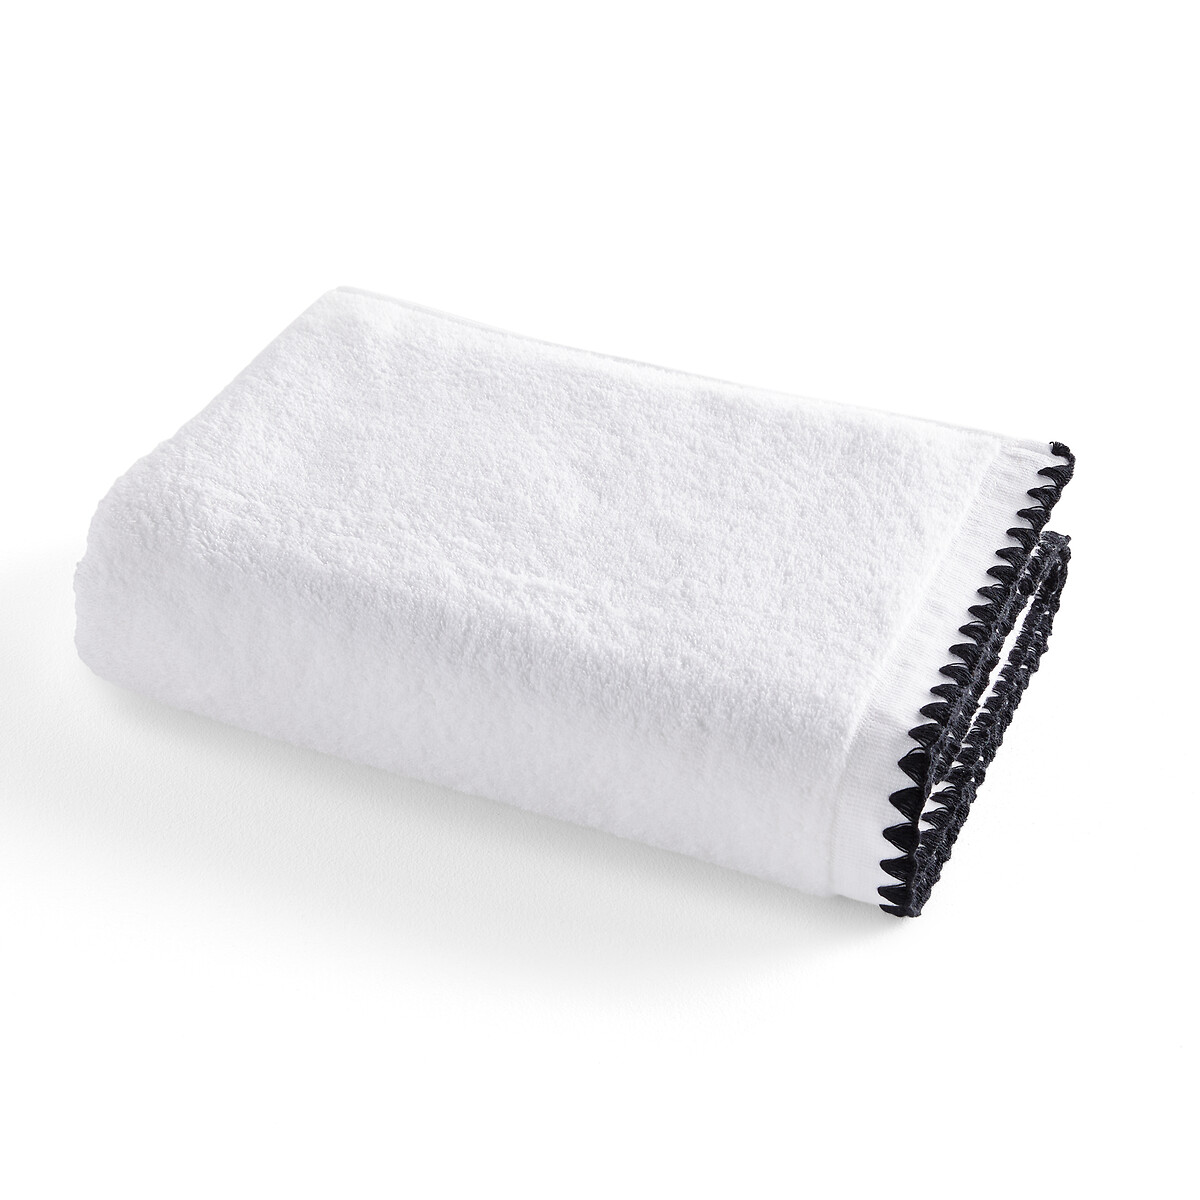 Полотенце банное макси с вышивкой из махровой ткани 500 г Merida  100 x 150 см белый LaRedoute, размер 100 x 150 см